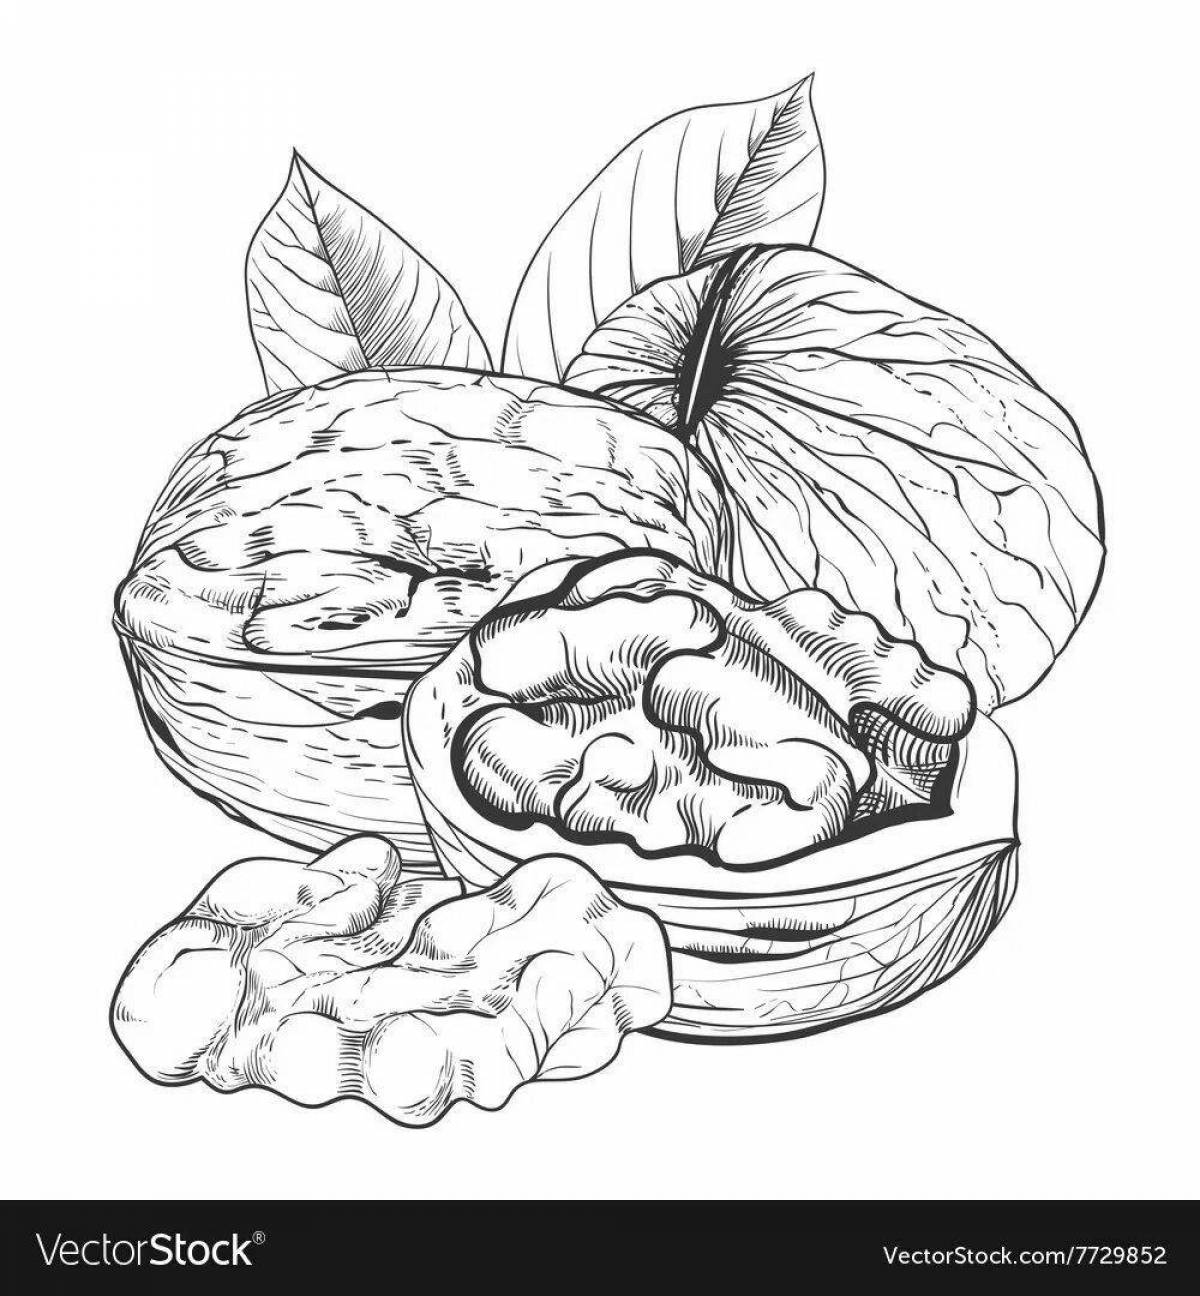 Humorous walnut coloring book